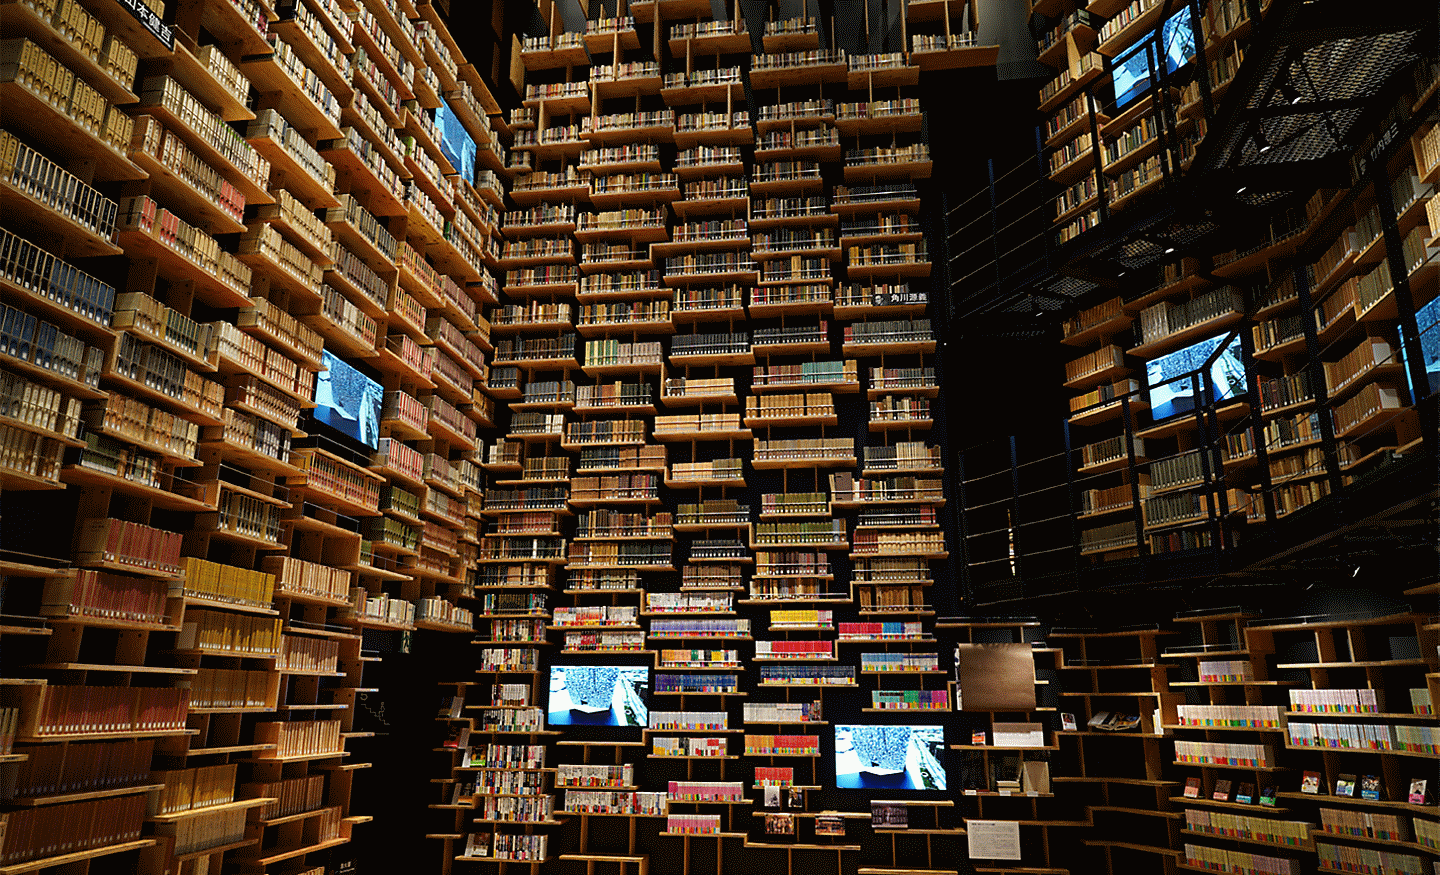 Imagem do interior de uma biblioteca captada com esta lente a alta resolução em todos os cantos